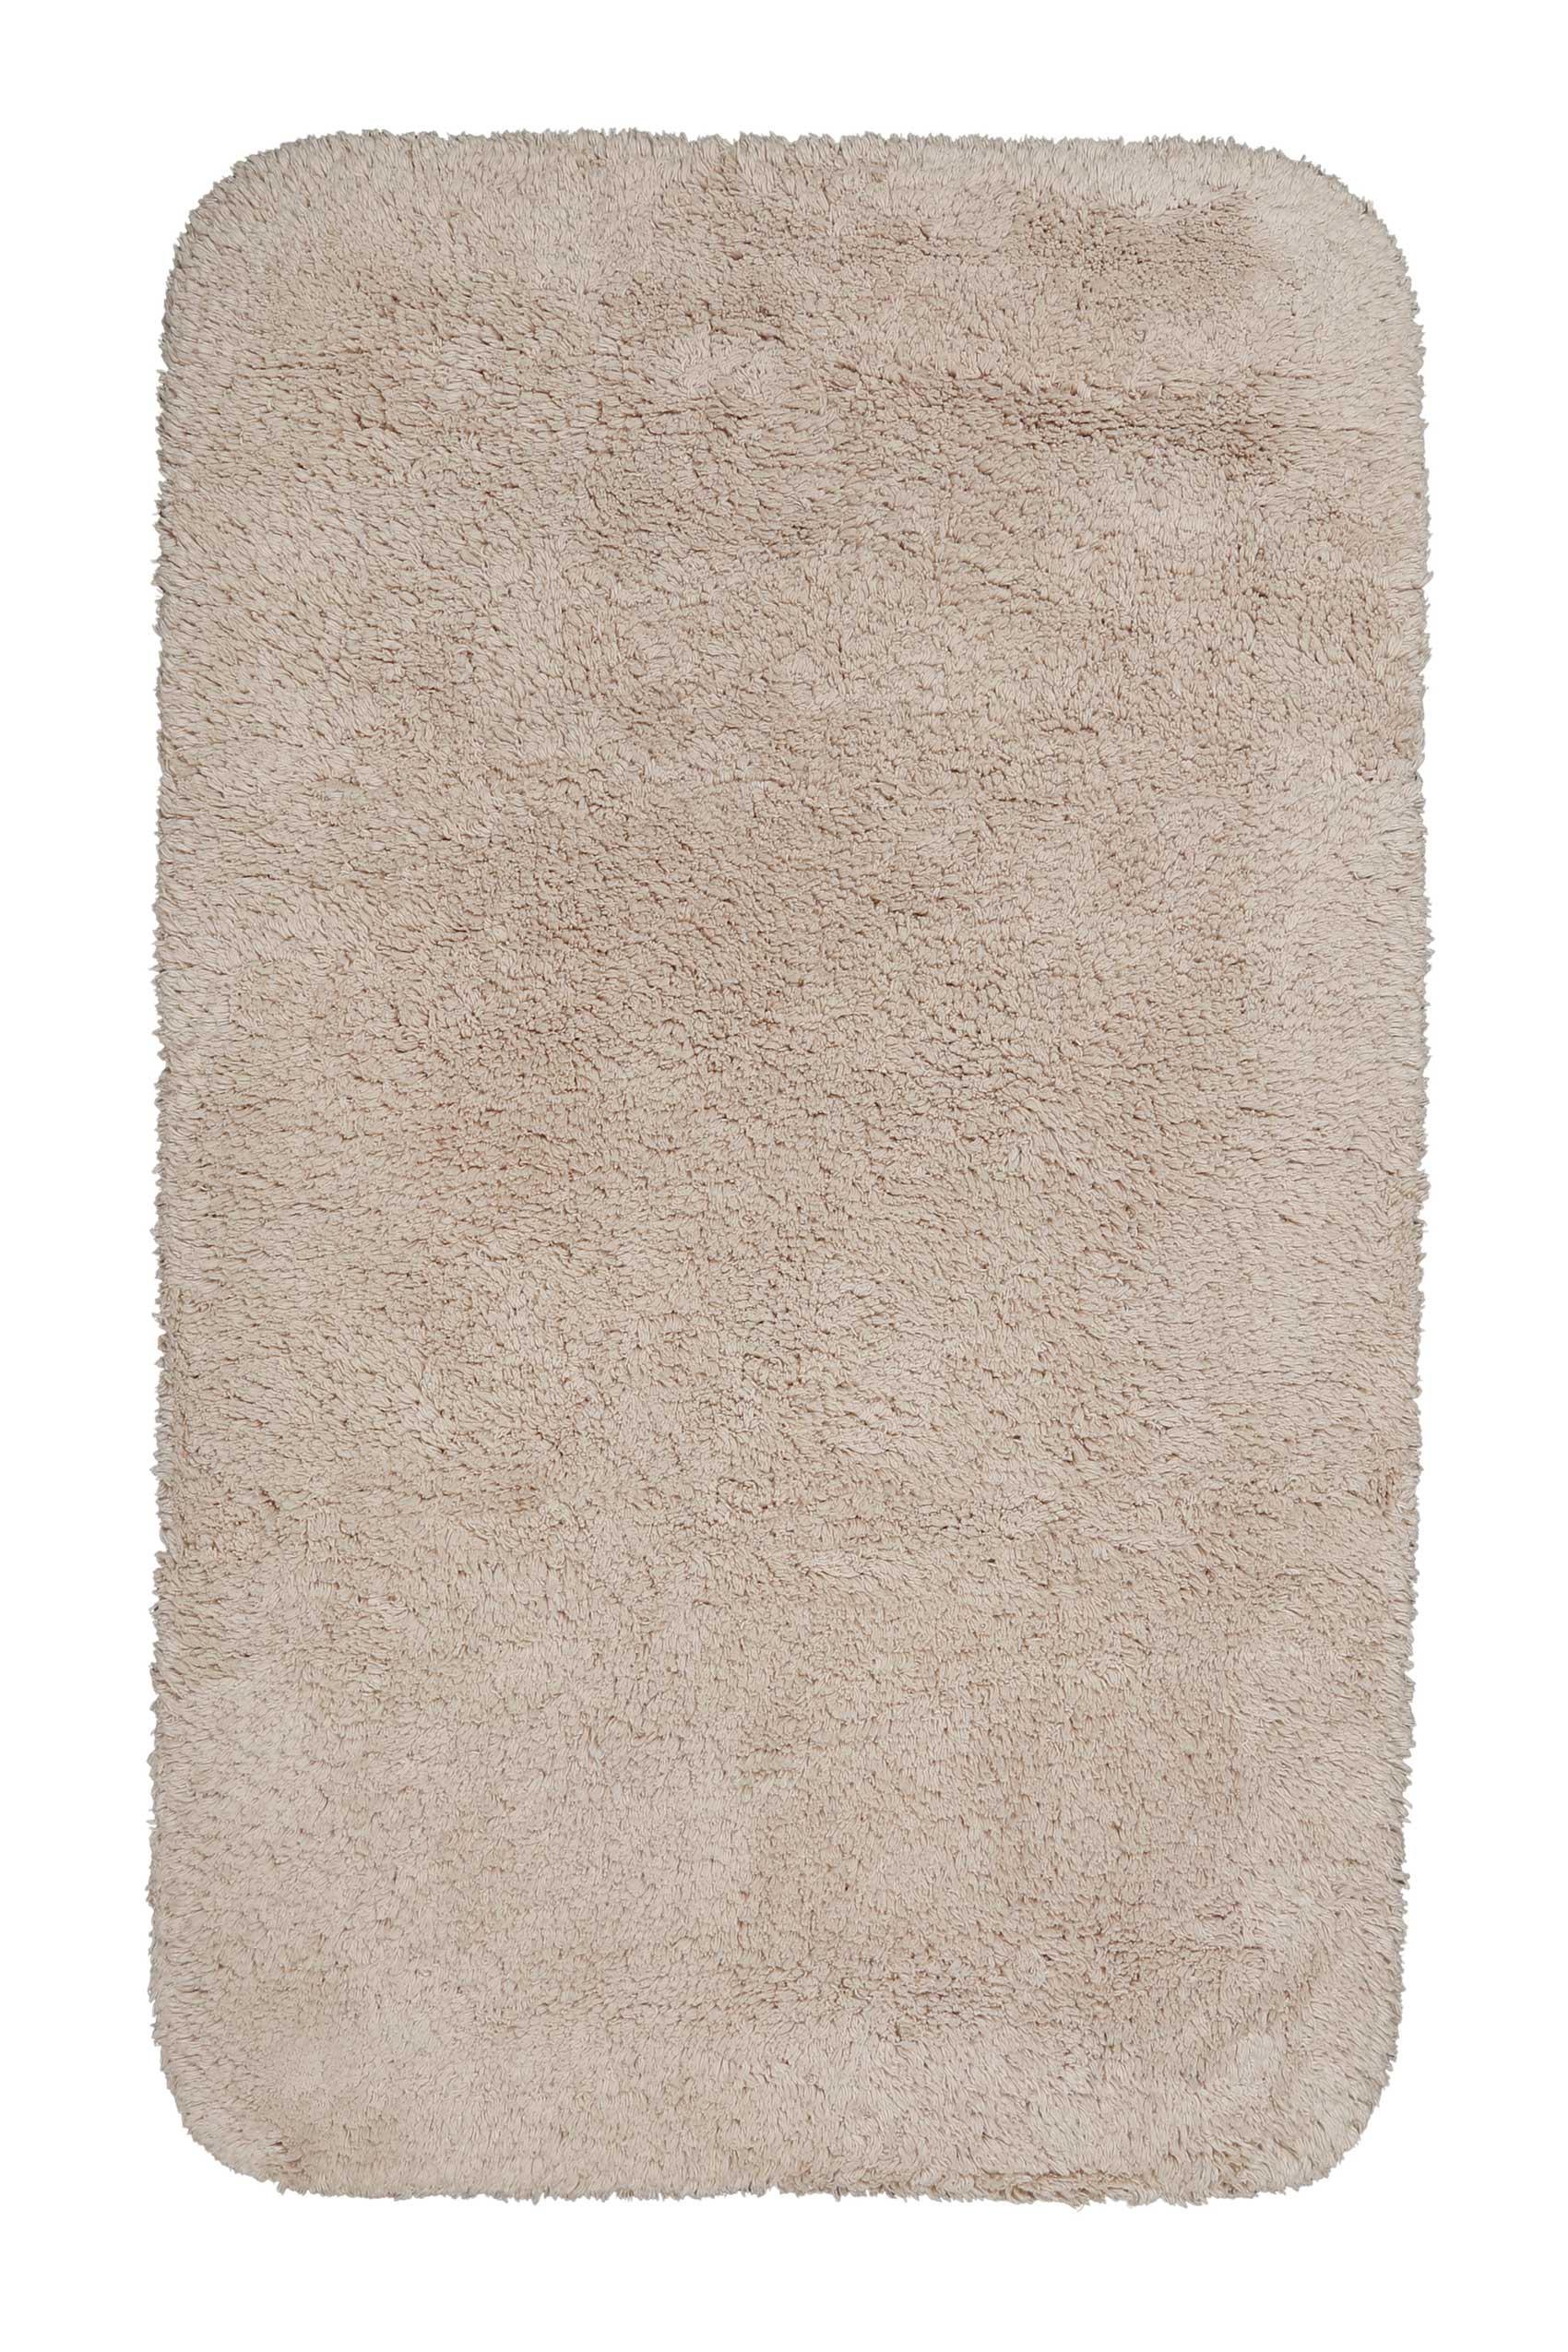 tapis de bain doux beige sable coton 70x120